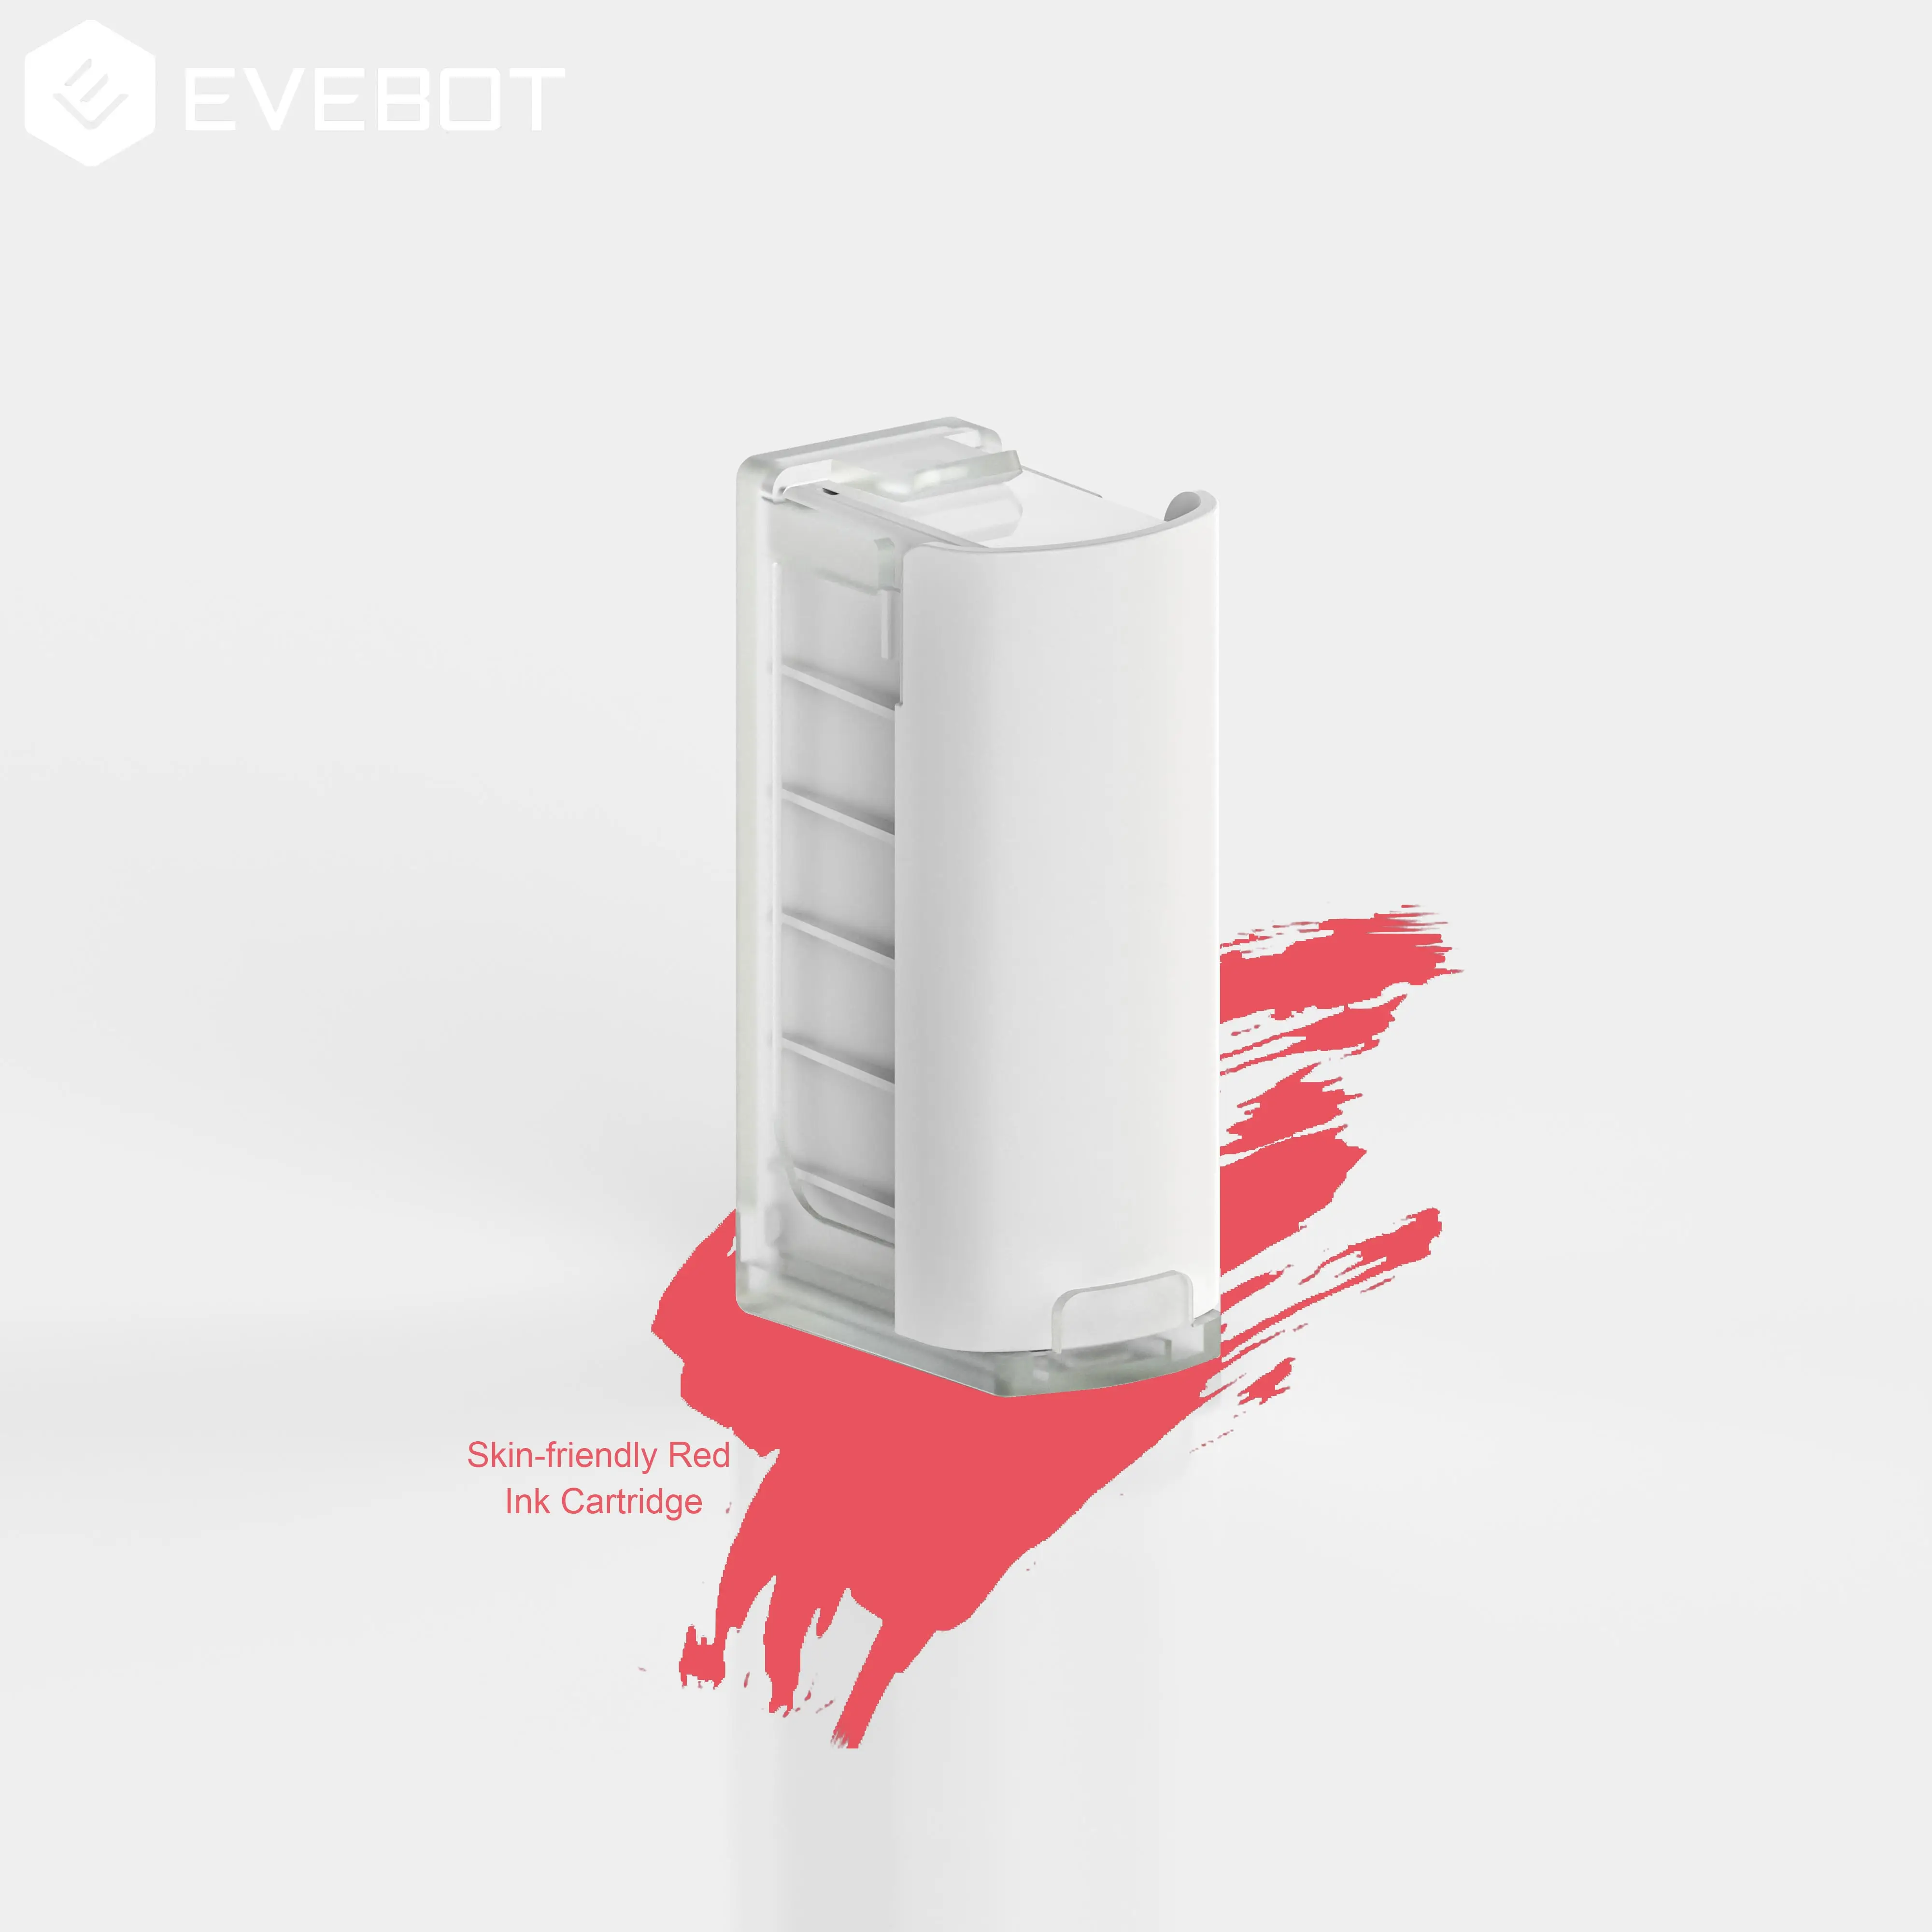 Evebot Huidvriendelijke Rode Inkt Cartridge Voor Printpen & Printpods Tattoo Printer Pocket Mini Handheld Diy Printer Smart Printer